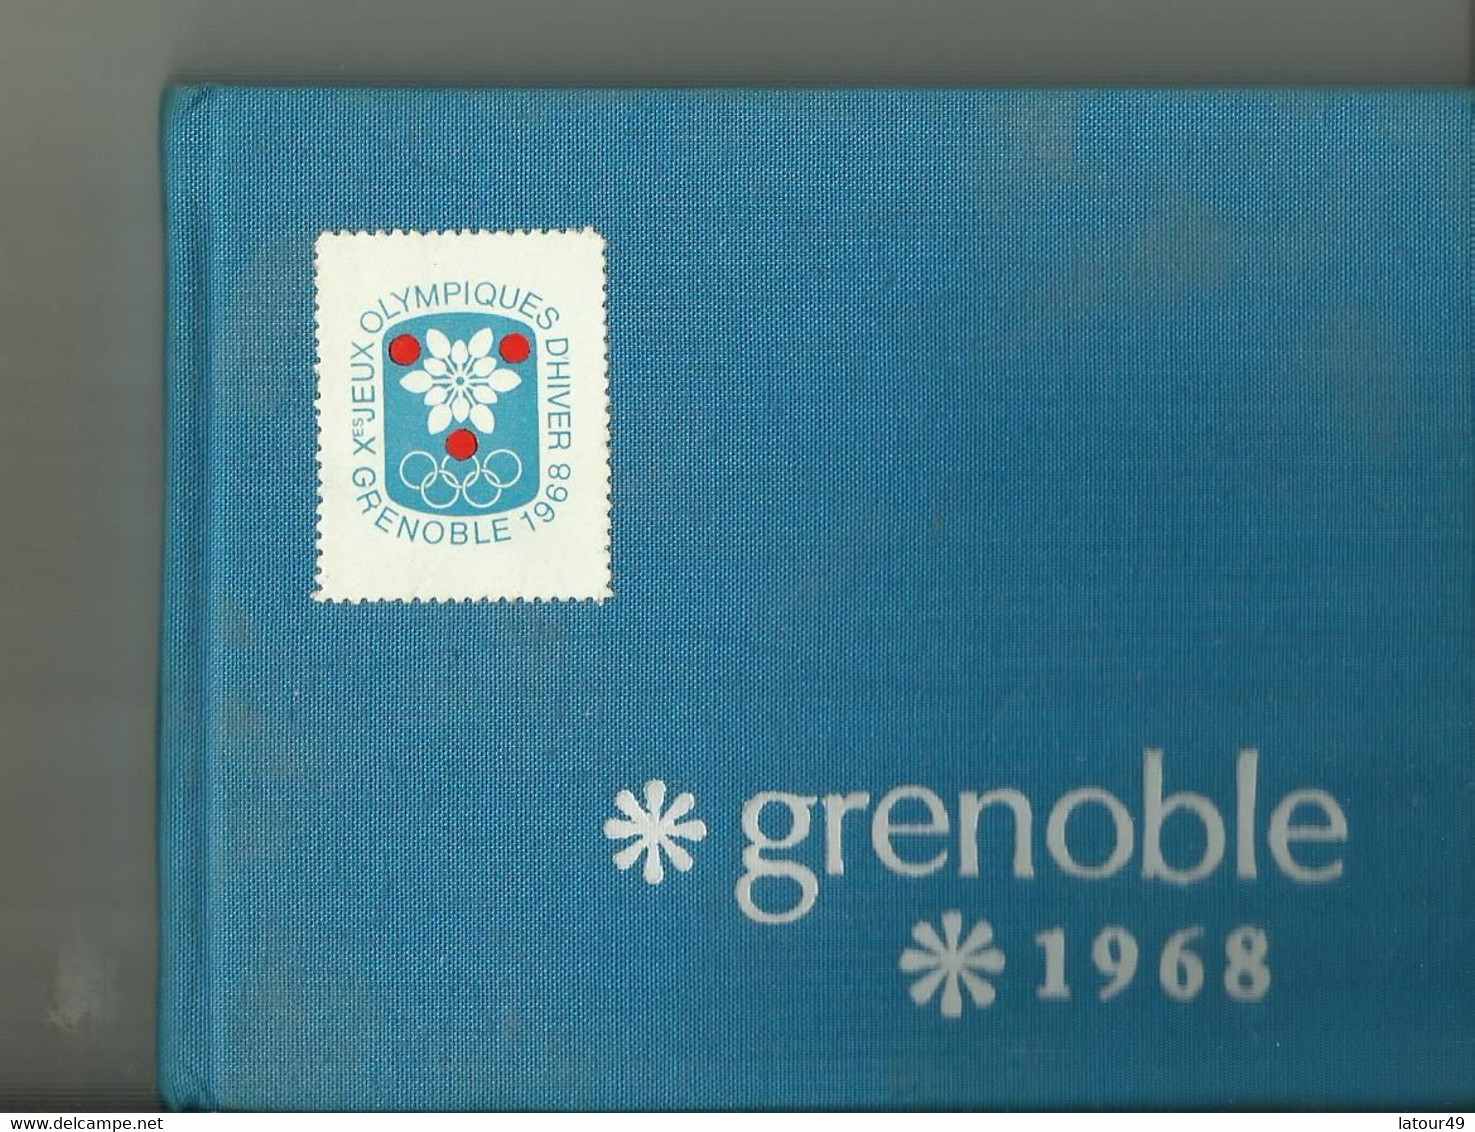 Jeux Olympique Grenoble1968  Autographes Pologne.jozet Kocjan Crwin Fredor Etc. Norvege Bjorn Wirkola Porte Drapeau Etc - Authographs